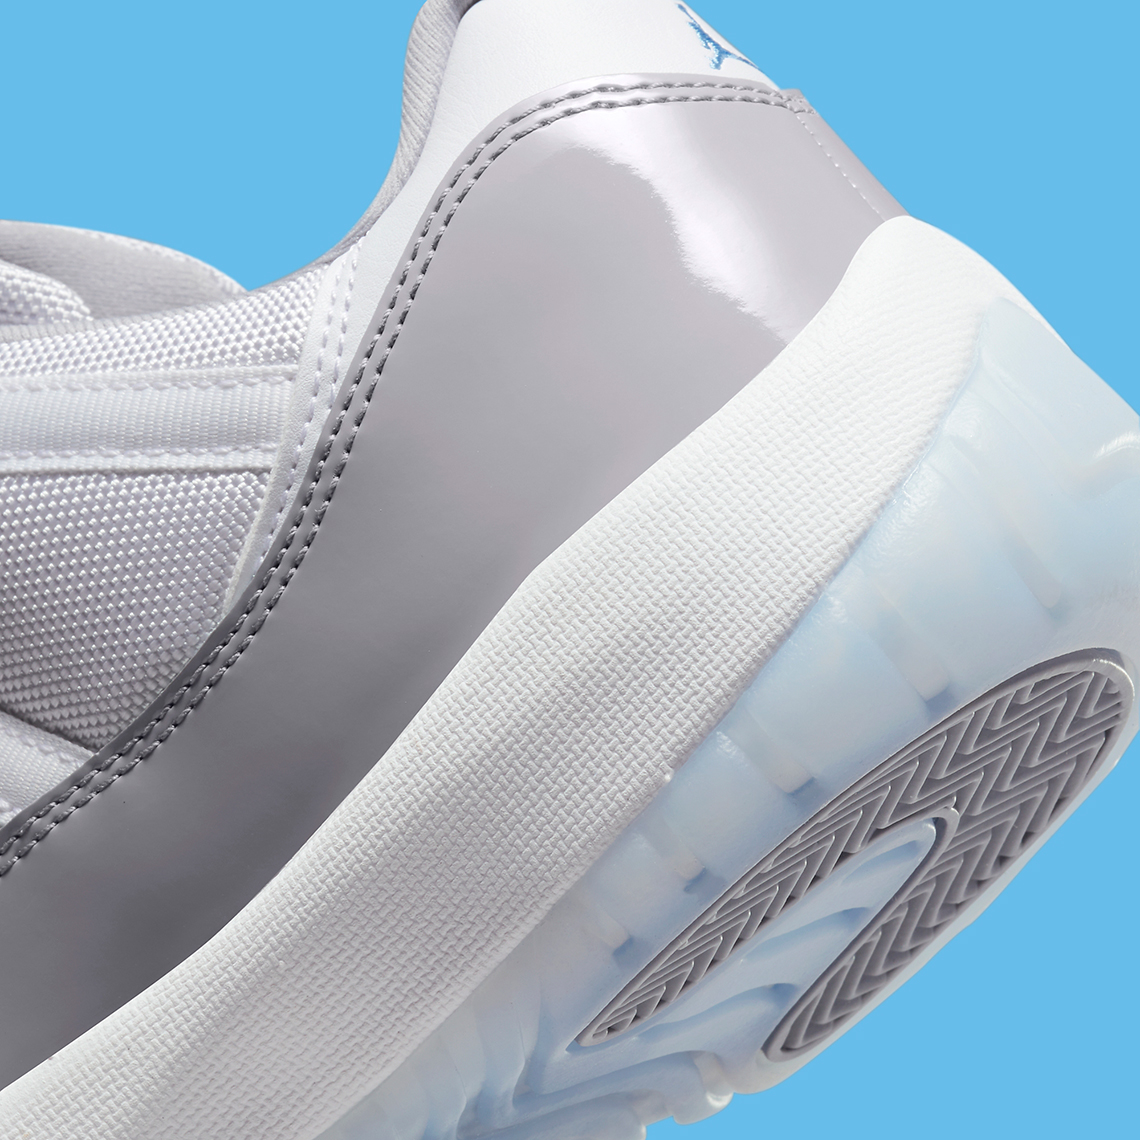 Nike Air Jordan 1 High PSG 29cm Cement Grey Av2187 140 Release Date 7